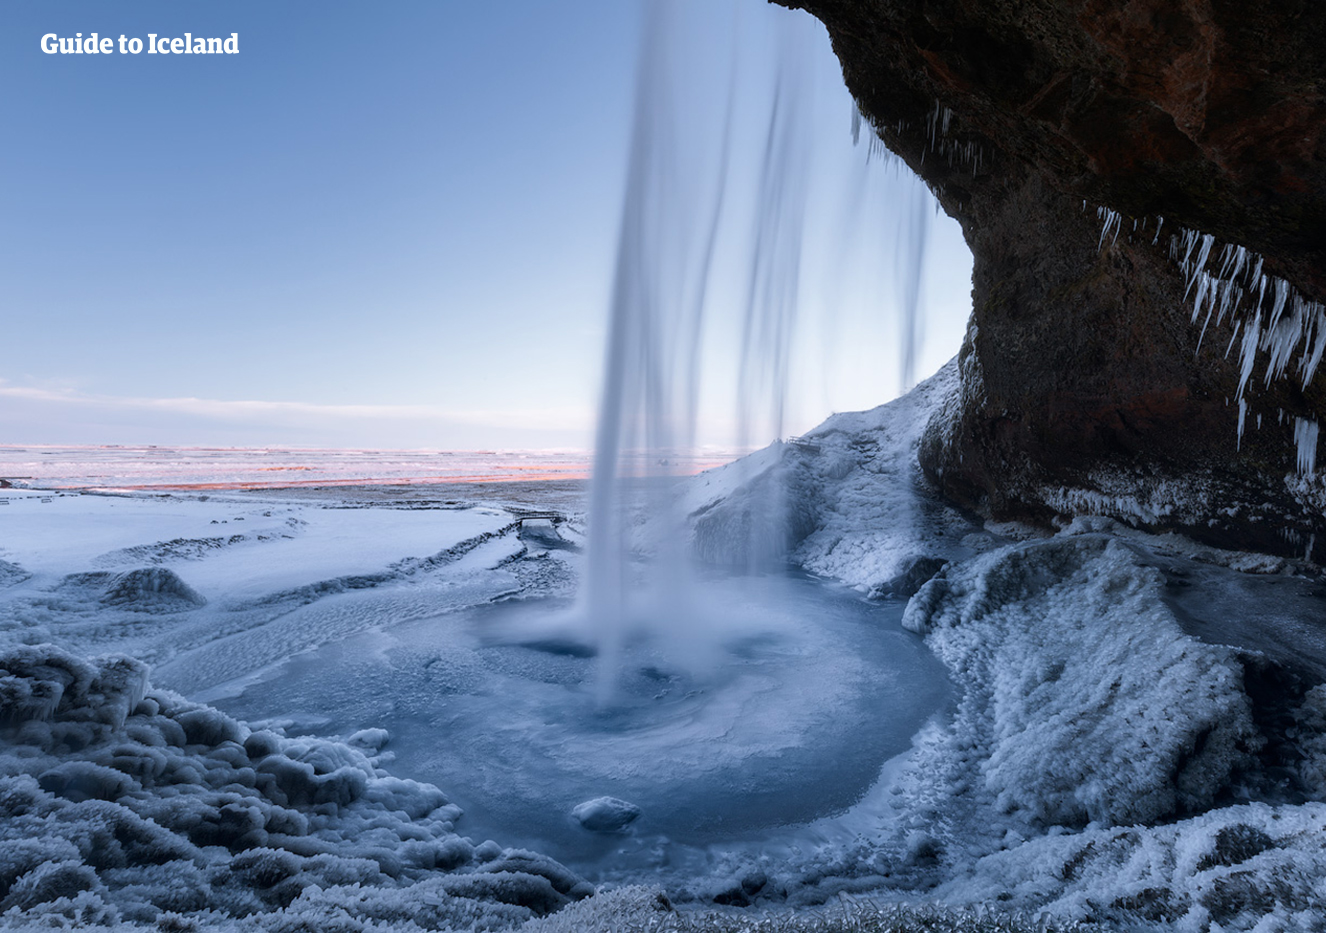 เมื่อทุกอย่างกลายเป็นน้ำแข็ง วิวที่ด้านหลังน้ำตกเซลยาแลนศ์ฟอสส์บนชายฝั่งทางใต้ของไอซ์แลนด์